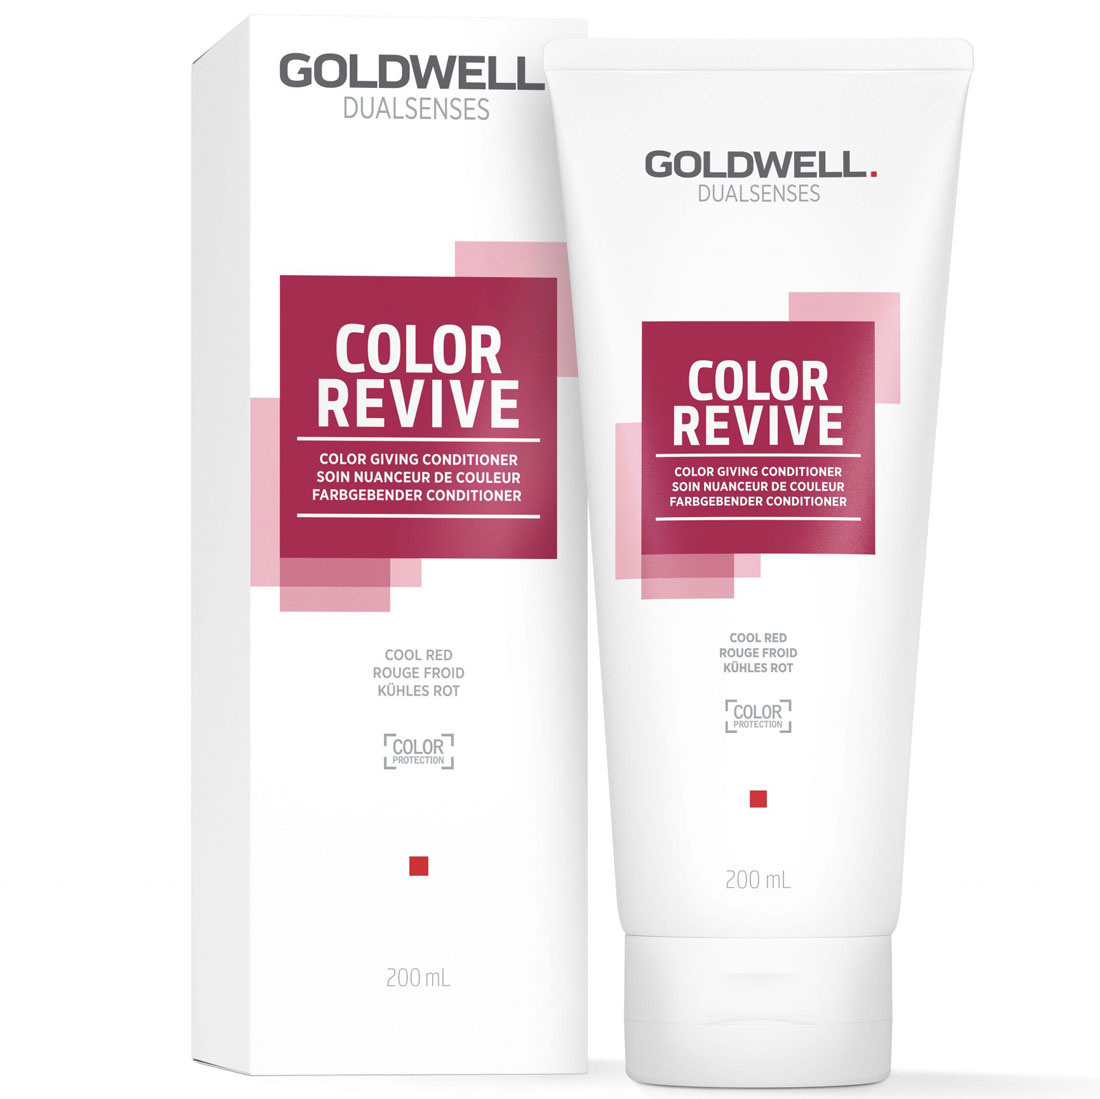 Goldwell Color Revive Conditioner Schnell Geliefert 12 95 Haarpflegekaufen